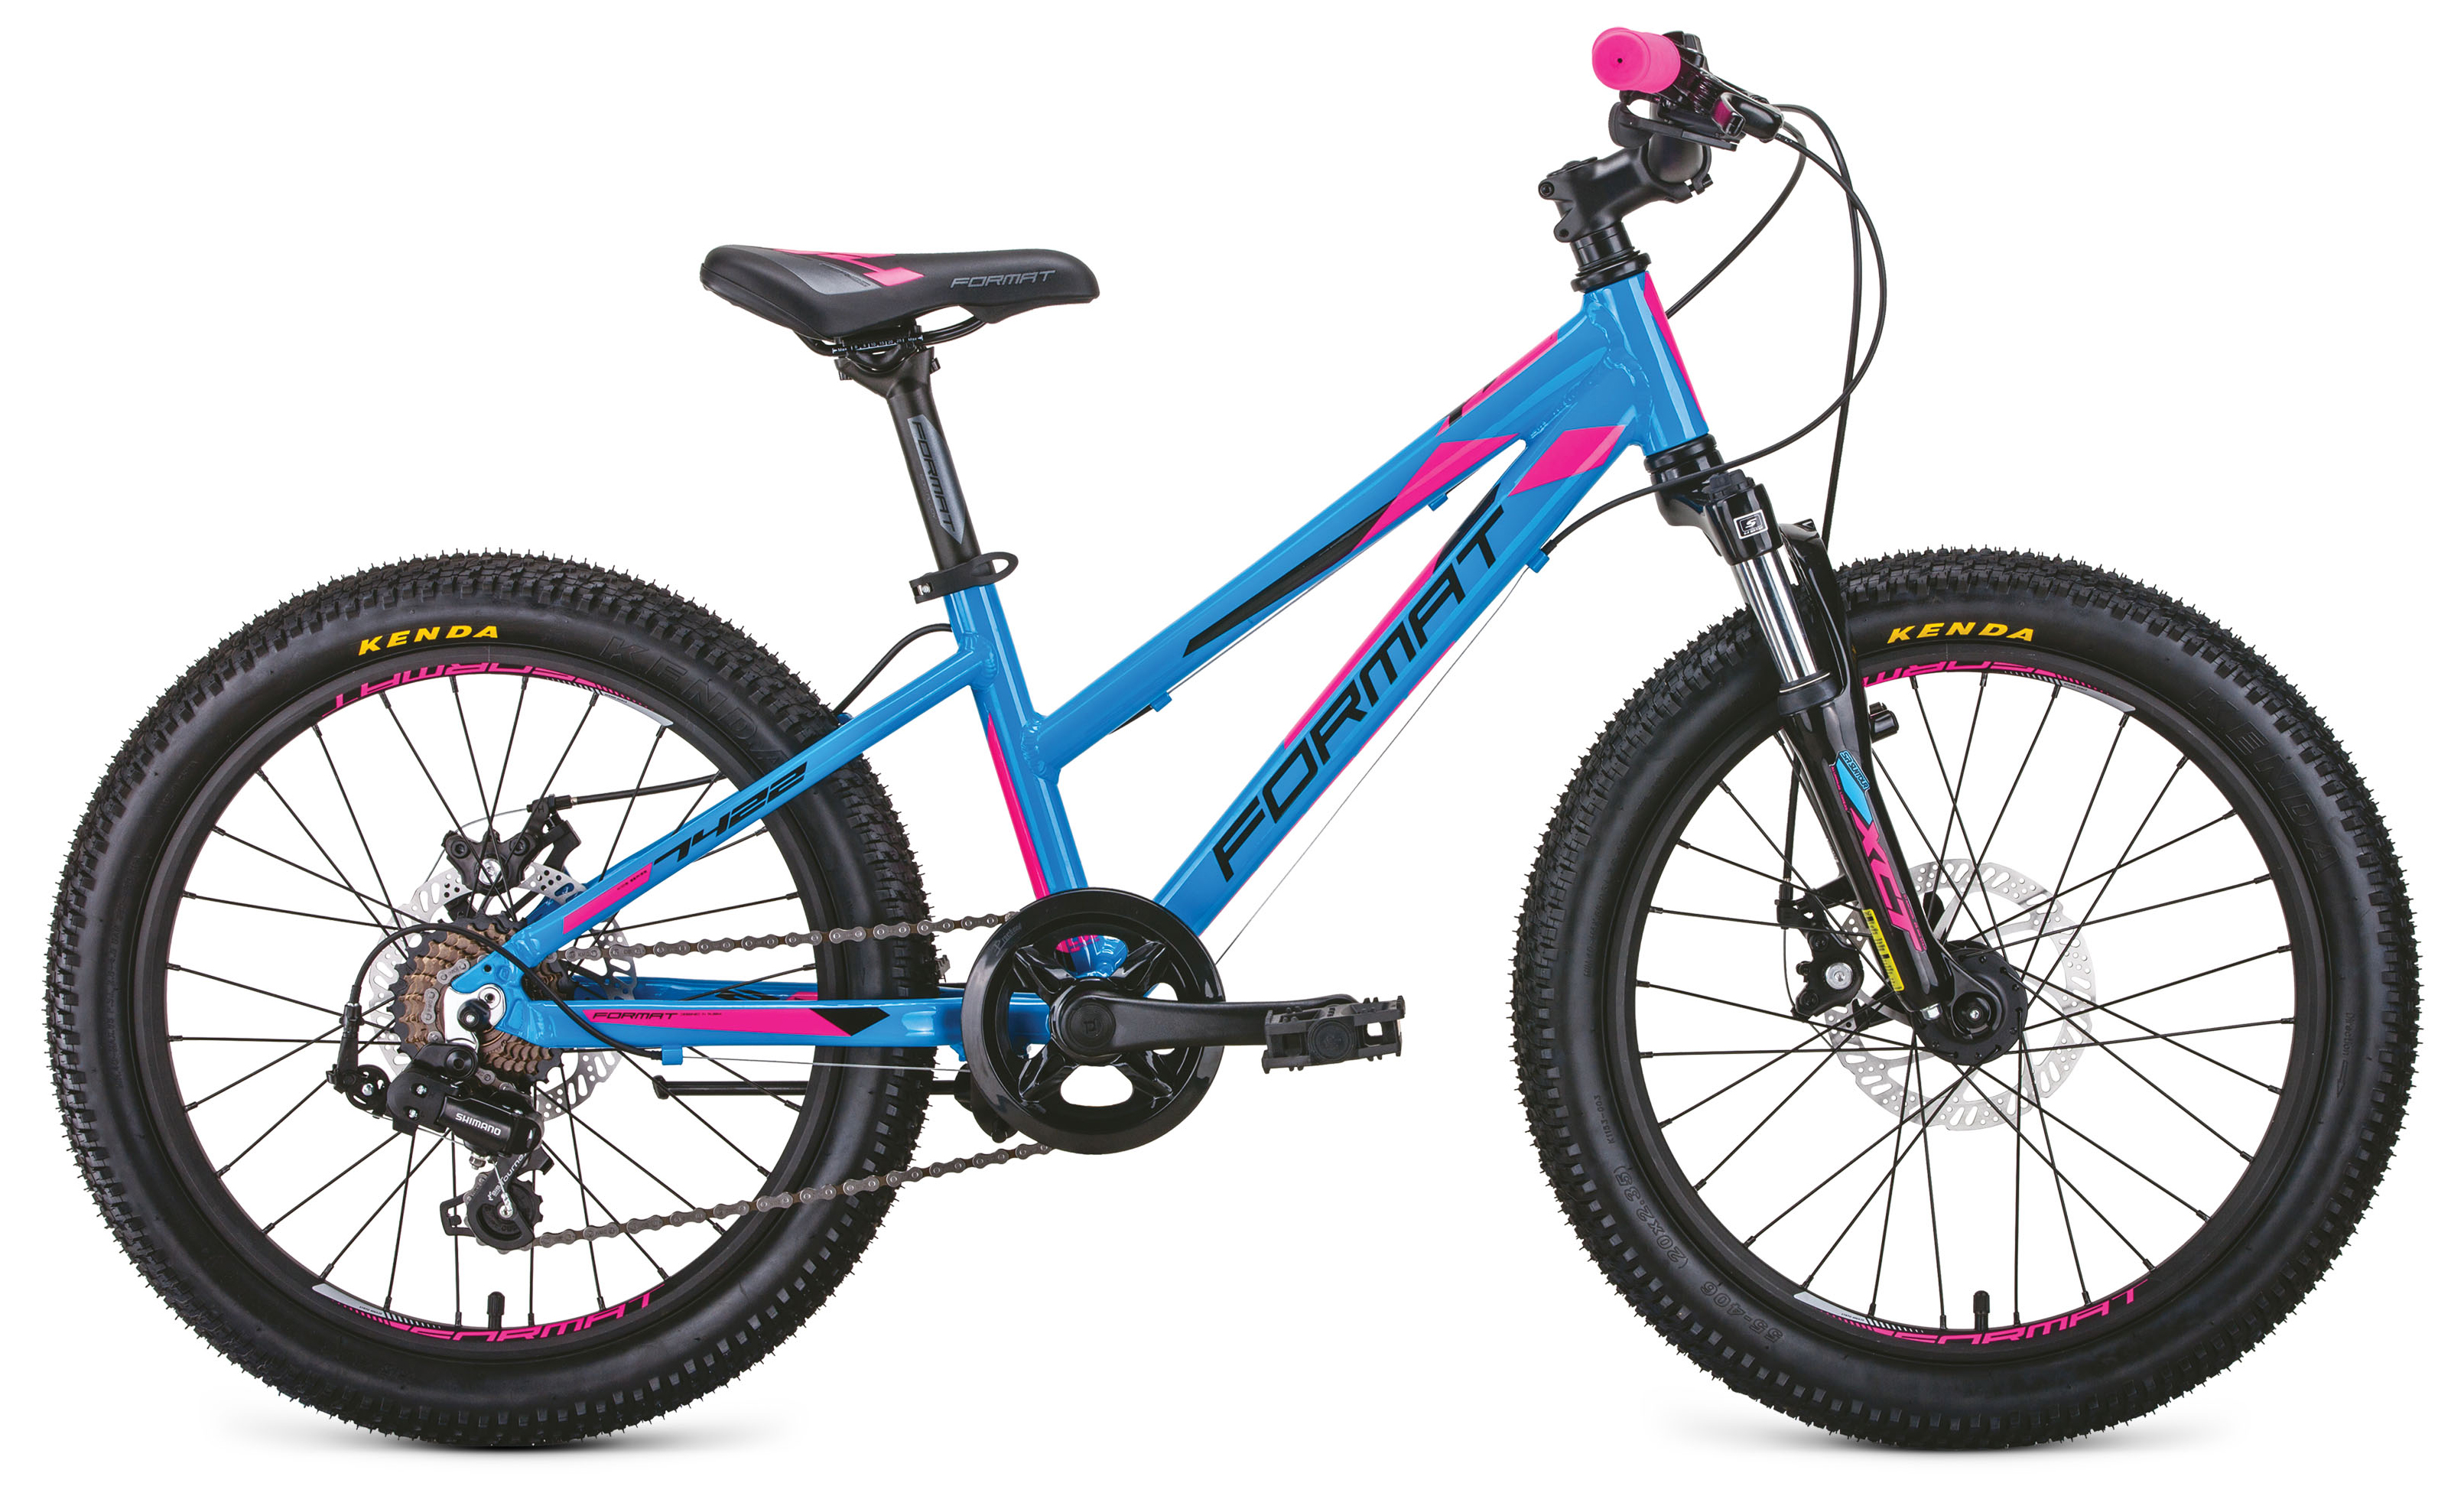  Отзывы о Детском велосипеде Format 7422 2020